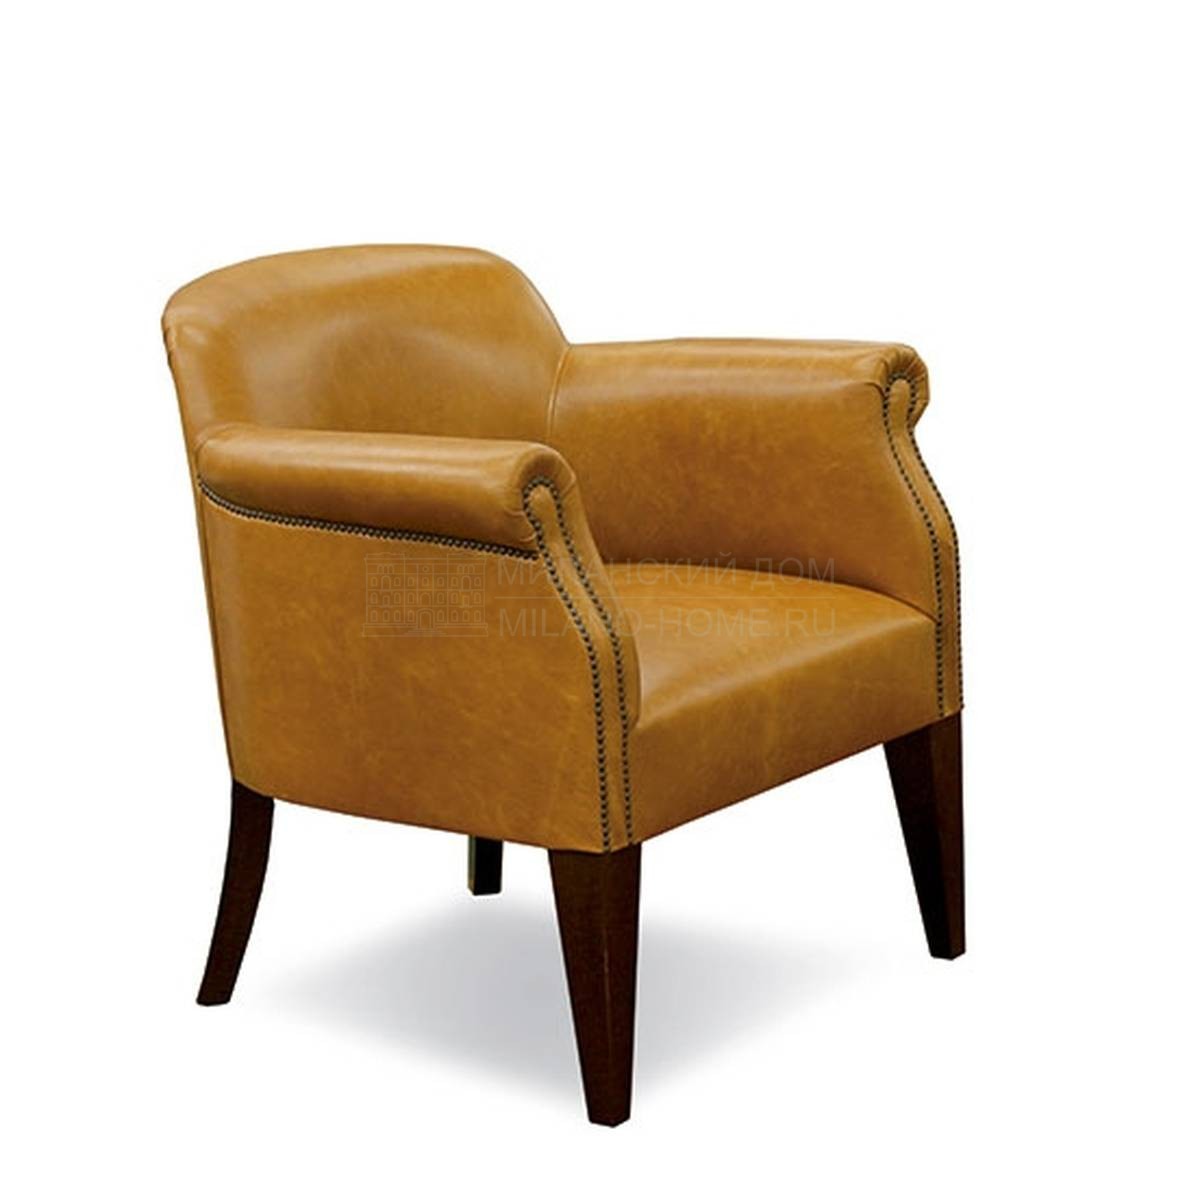 Кресло Club/armchair из Испании фабрики MANUEL LARRAGA